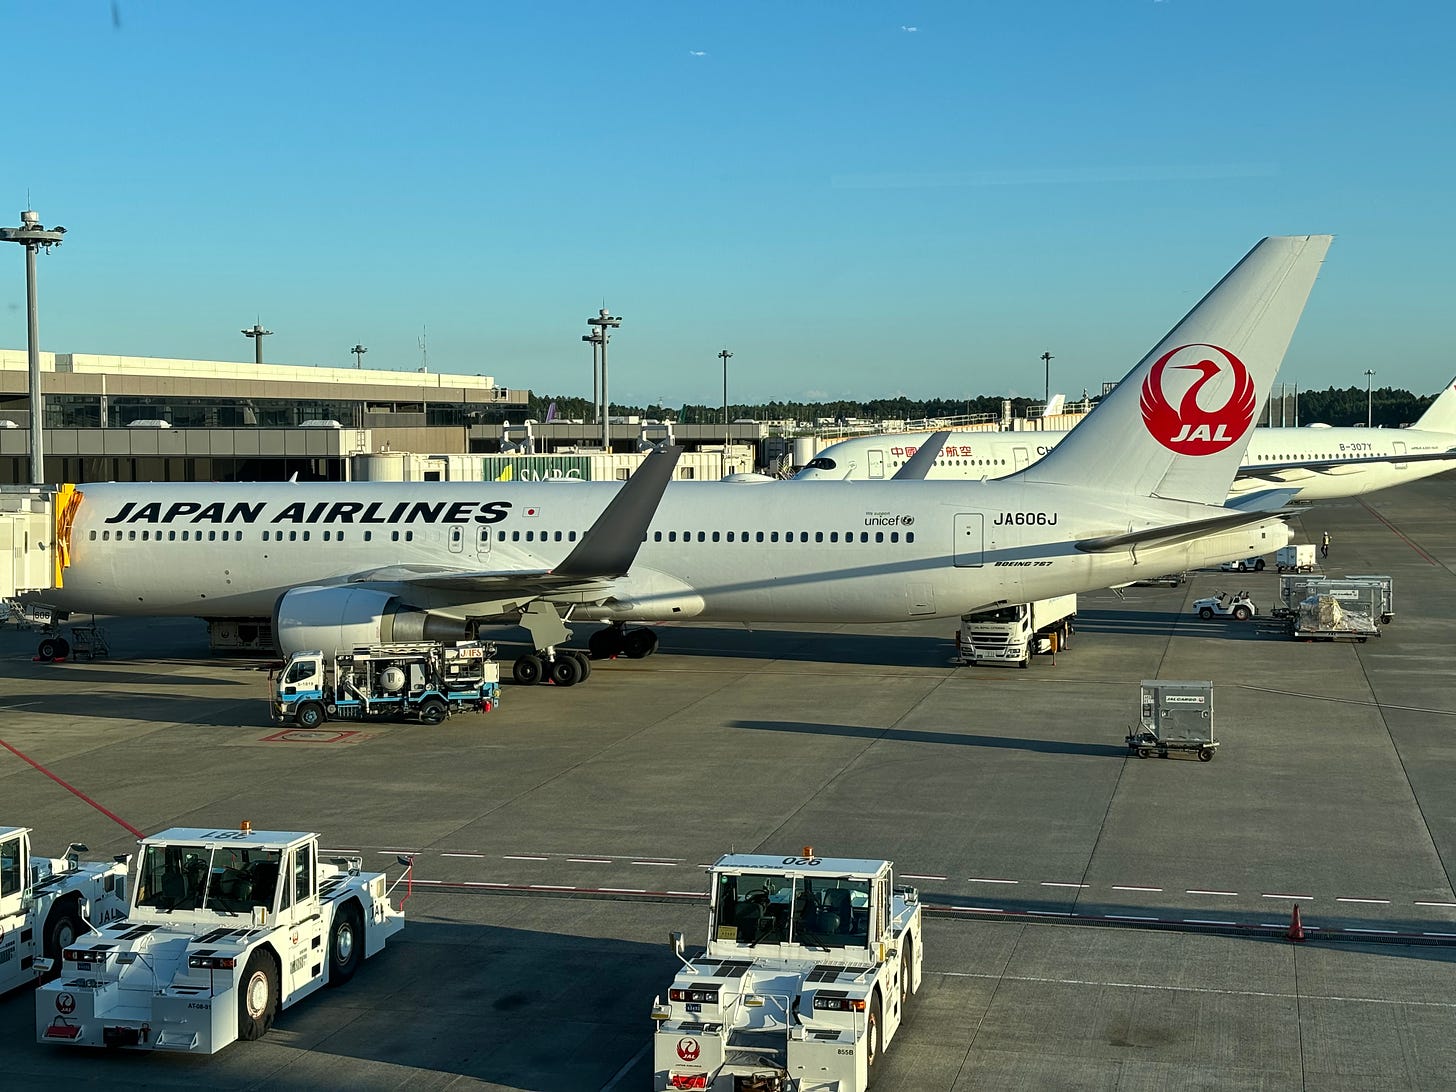 Japan Airlines B787 parked at Tokyo Narita airport.